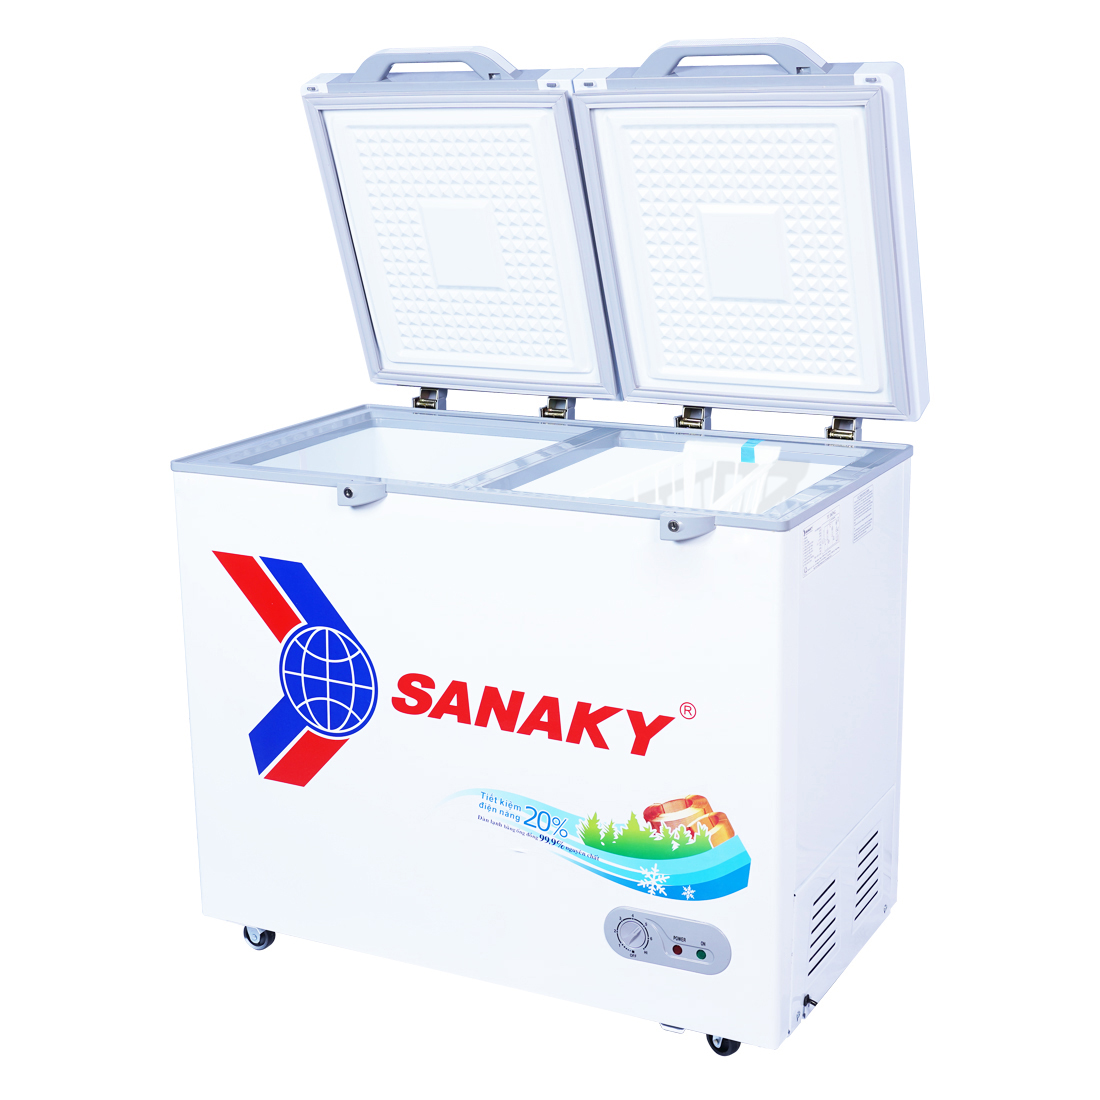 Tủ Đông Sanaky VH-2899A2KD